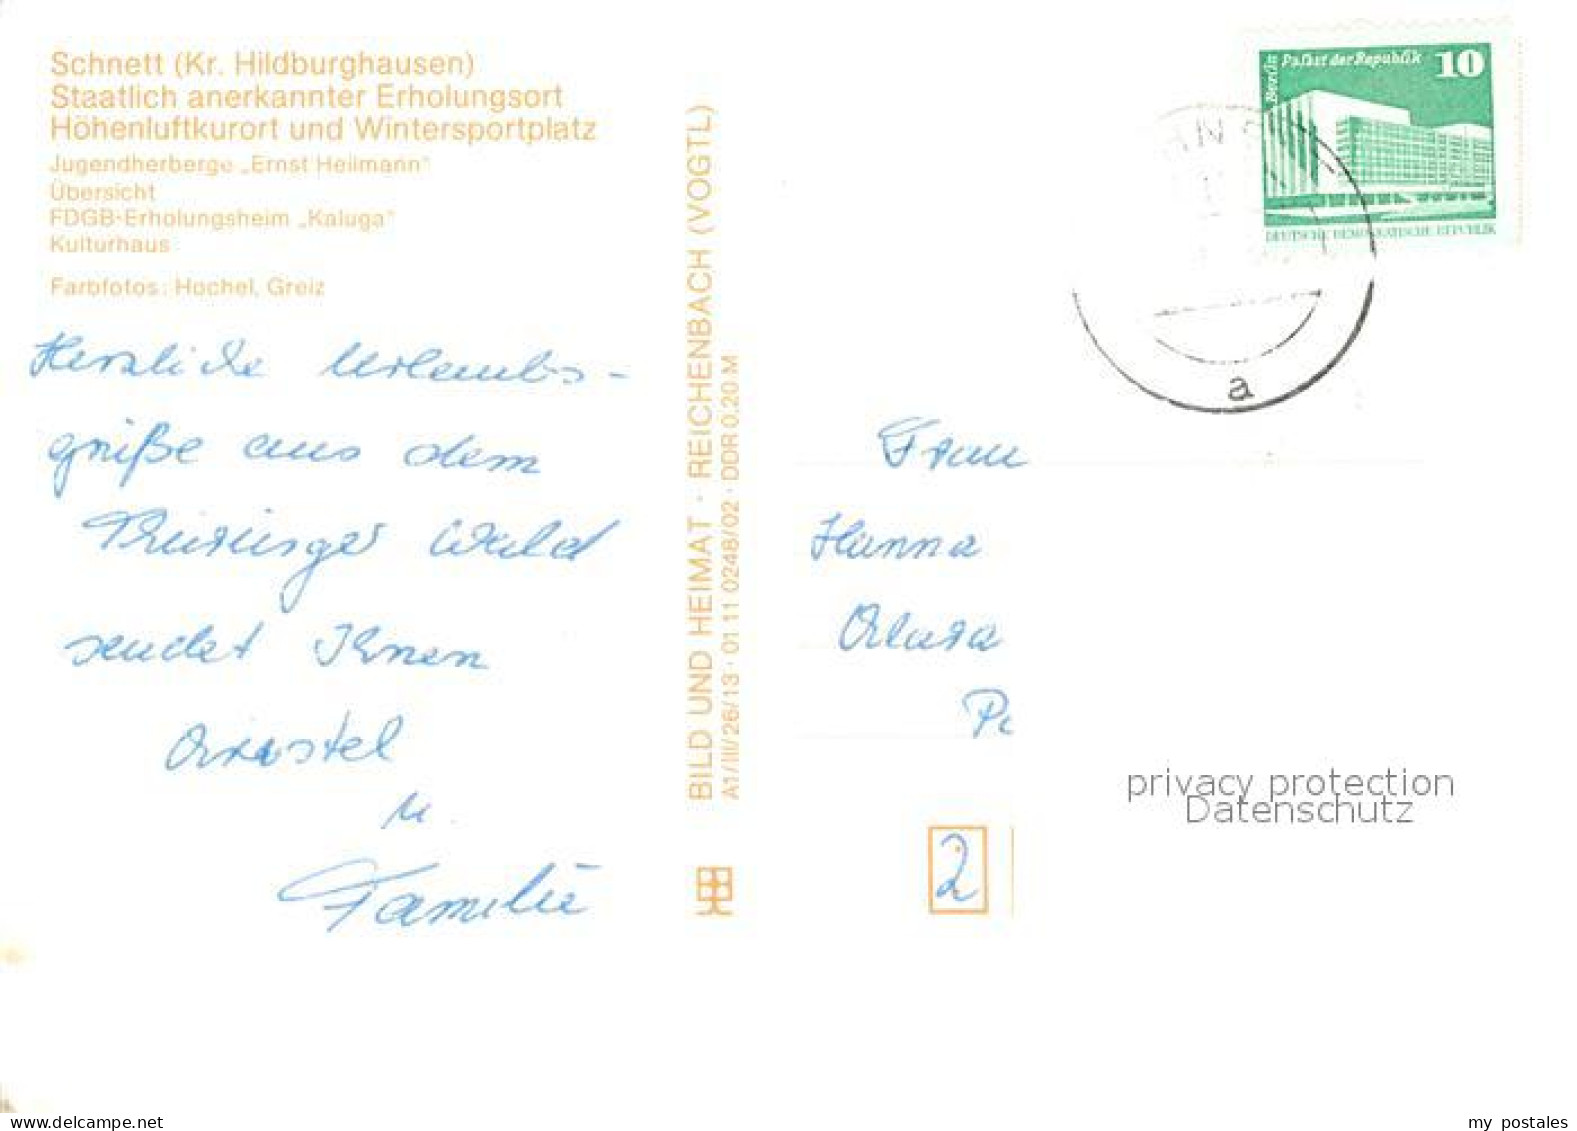 73063694 Schnett Jugendherberge Ernst Heilmann Erholungsheim Kaluga  Schnett - Masserberg